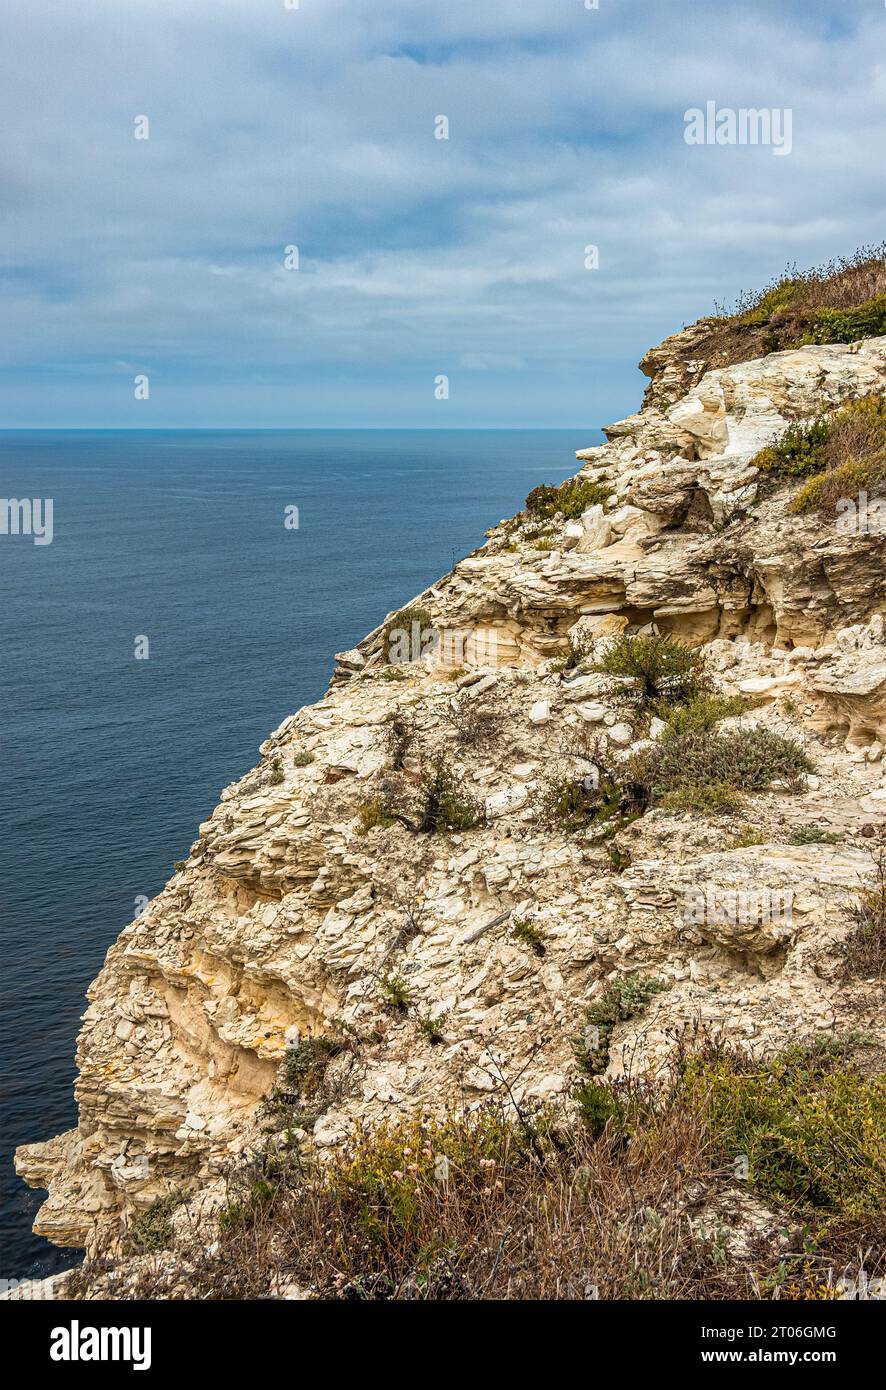 Santa Cruz Island, CA, USA - 14. September 2023: Die Klippe ist abbröckelnd und hat eine gelb-weiße Geologie mit dünn verteilten grünen Flecken. Blaue Wolke Stockfoto